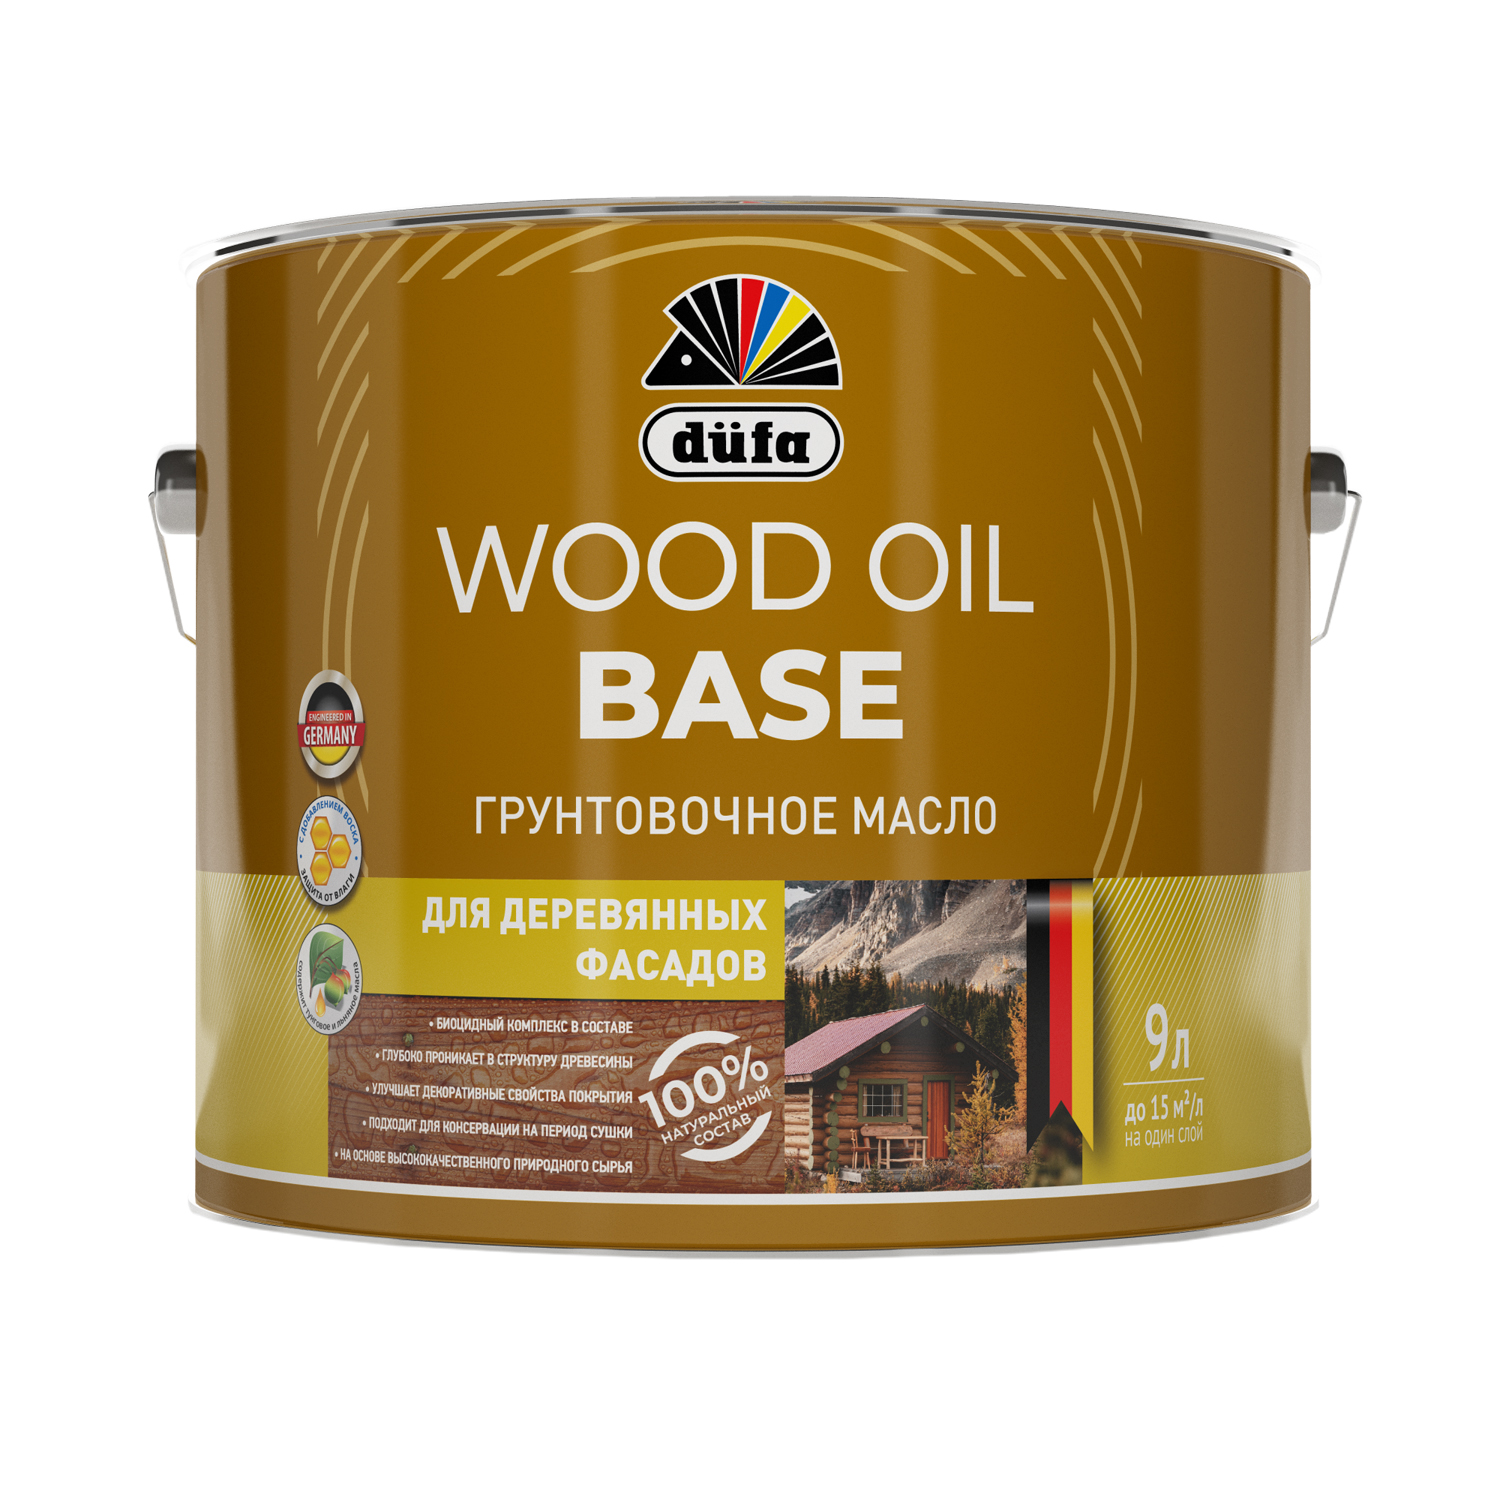 Грунтовочное масло Dufa (Дюфа) WOOD OIL BASE 9л МП00-011638 грунтовочное масло dufa дюфа wood oil base 2л